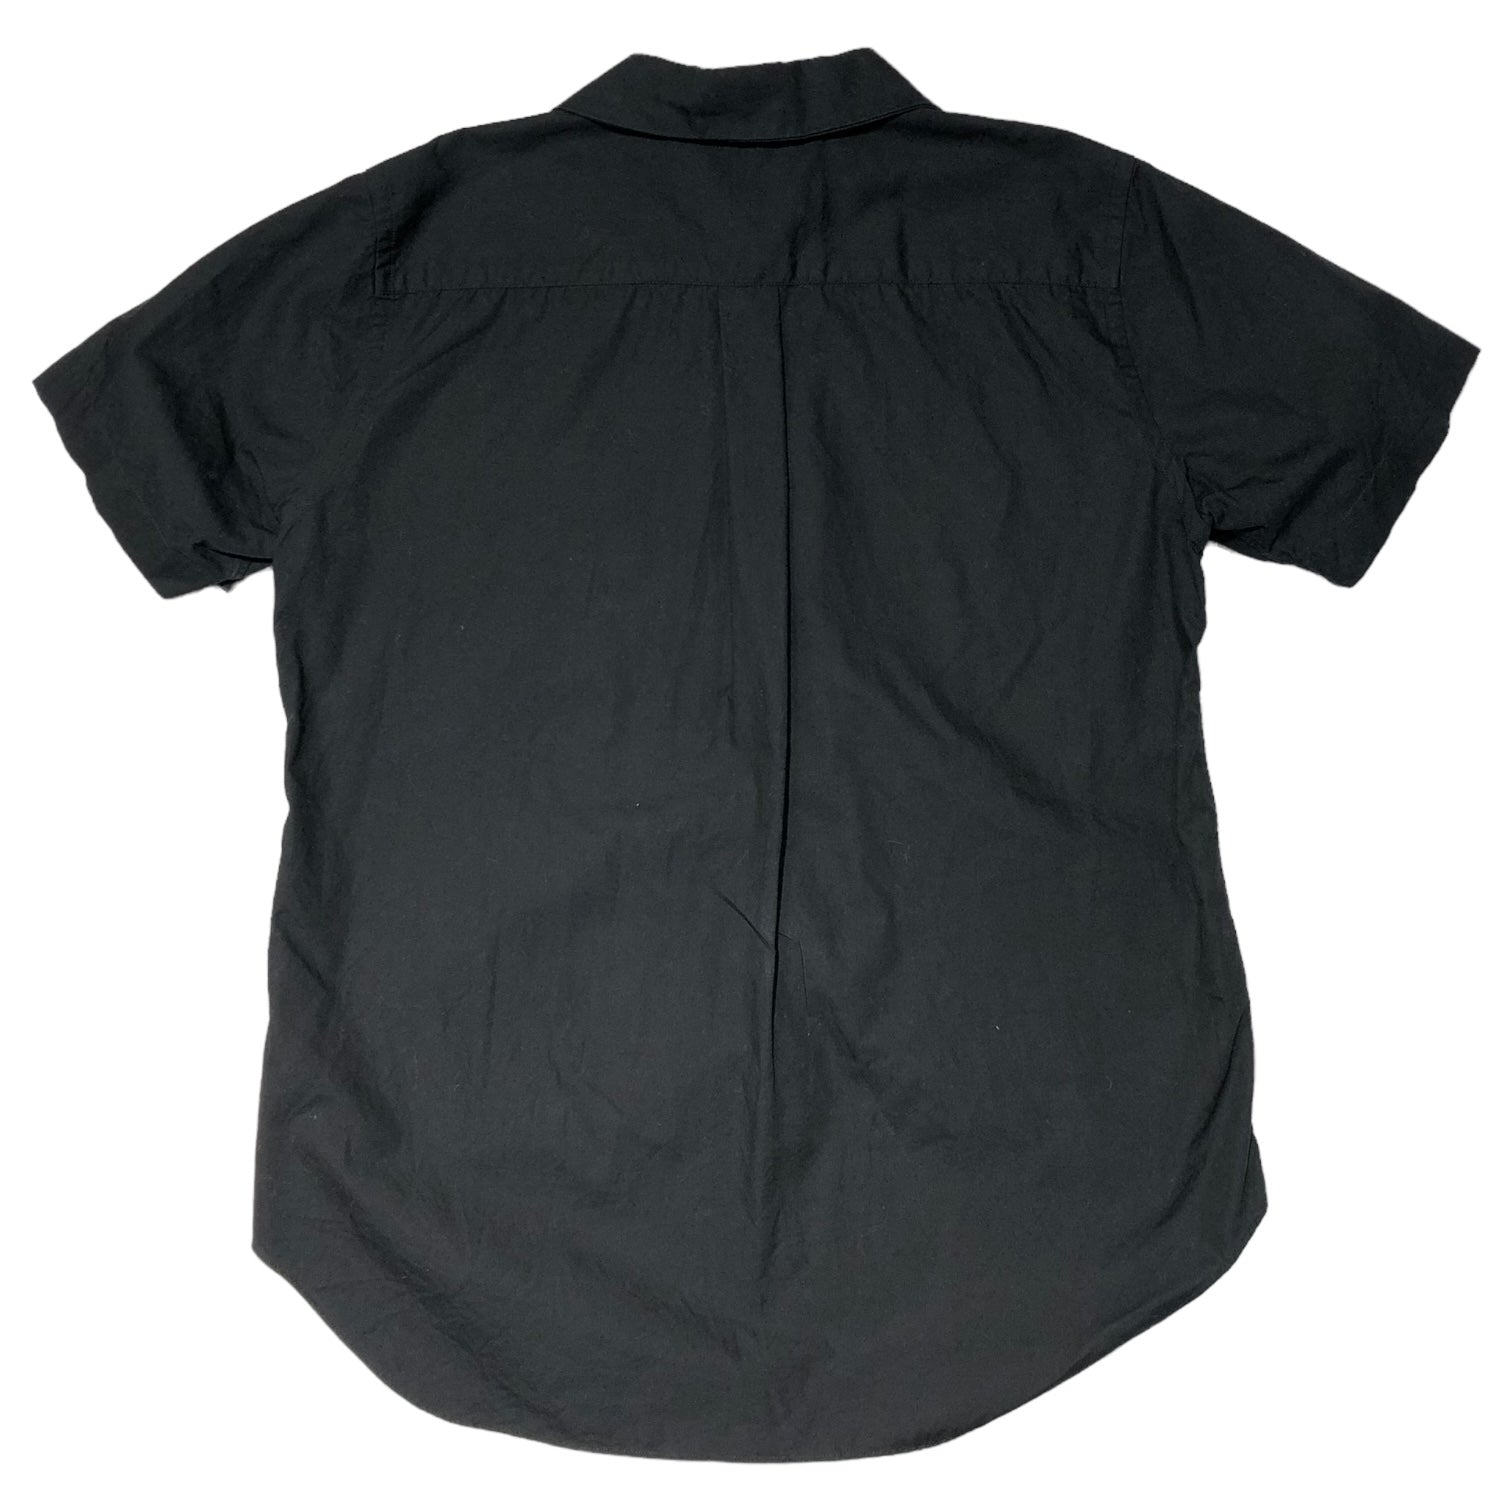 BLACK COMME des GARCONS(ブラックコムデギャルソン) 17SS round collar S/S shirt 丸襟半袖シャツ 1S-B018 XS ブラック ブラウス AD2016